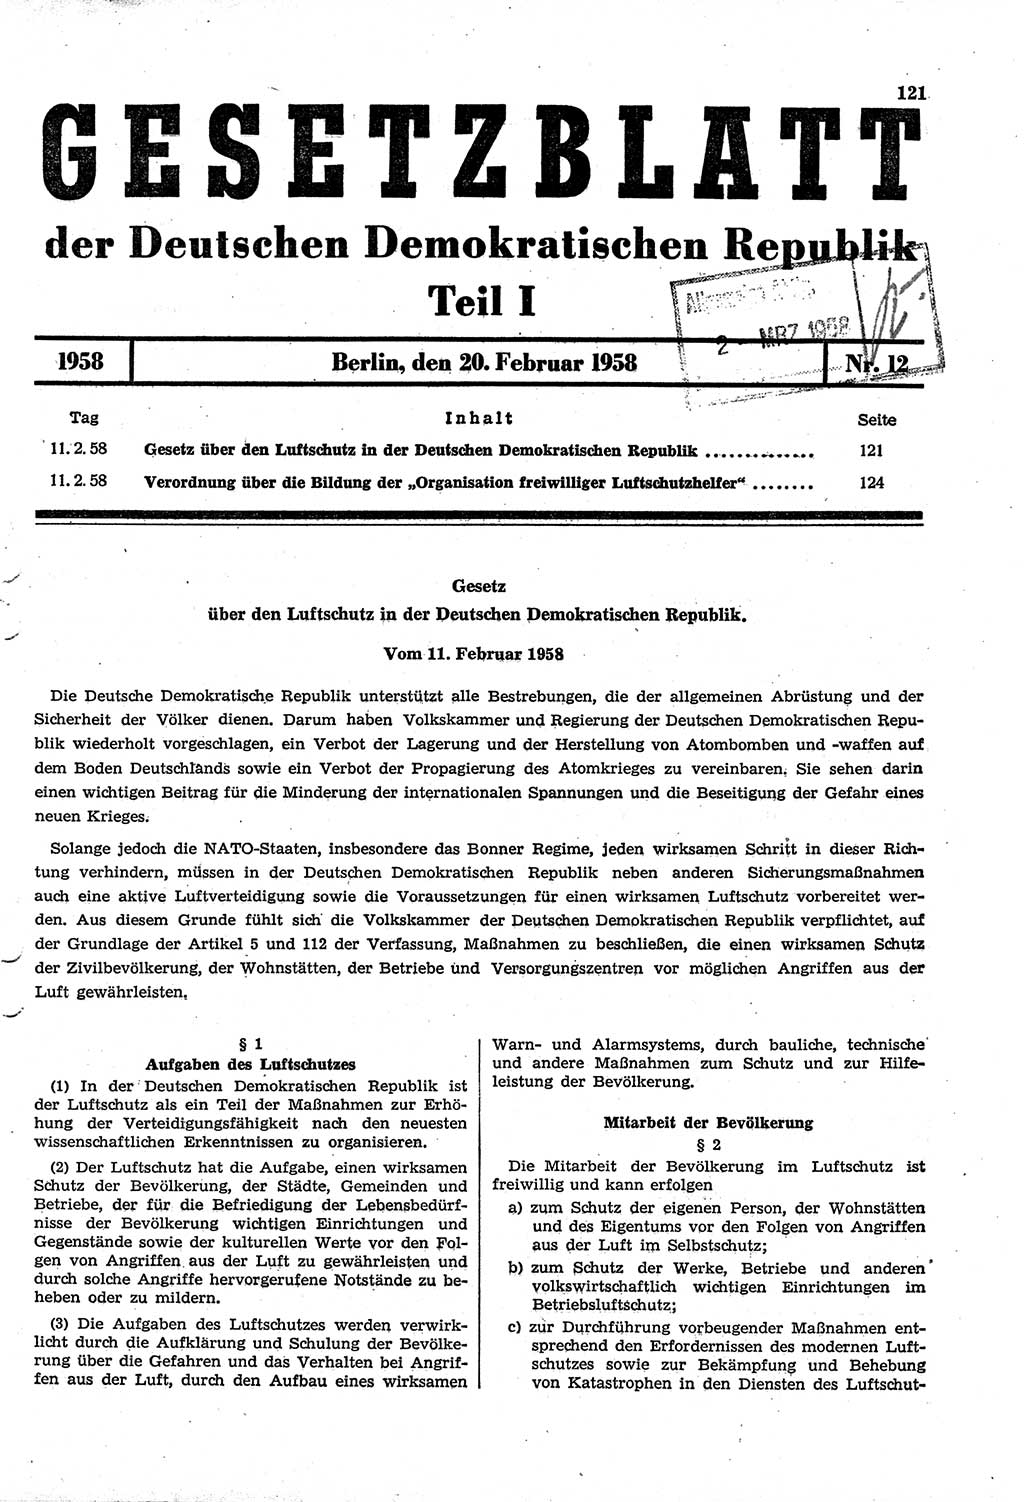 Gesetzblatt (GBl.) der Deutschen Demokratischen Republik (DDR) Teil Ⅰ 1958, Seite 121 (GBl. DDR Ⅰ 1958, S. 121)